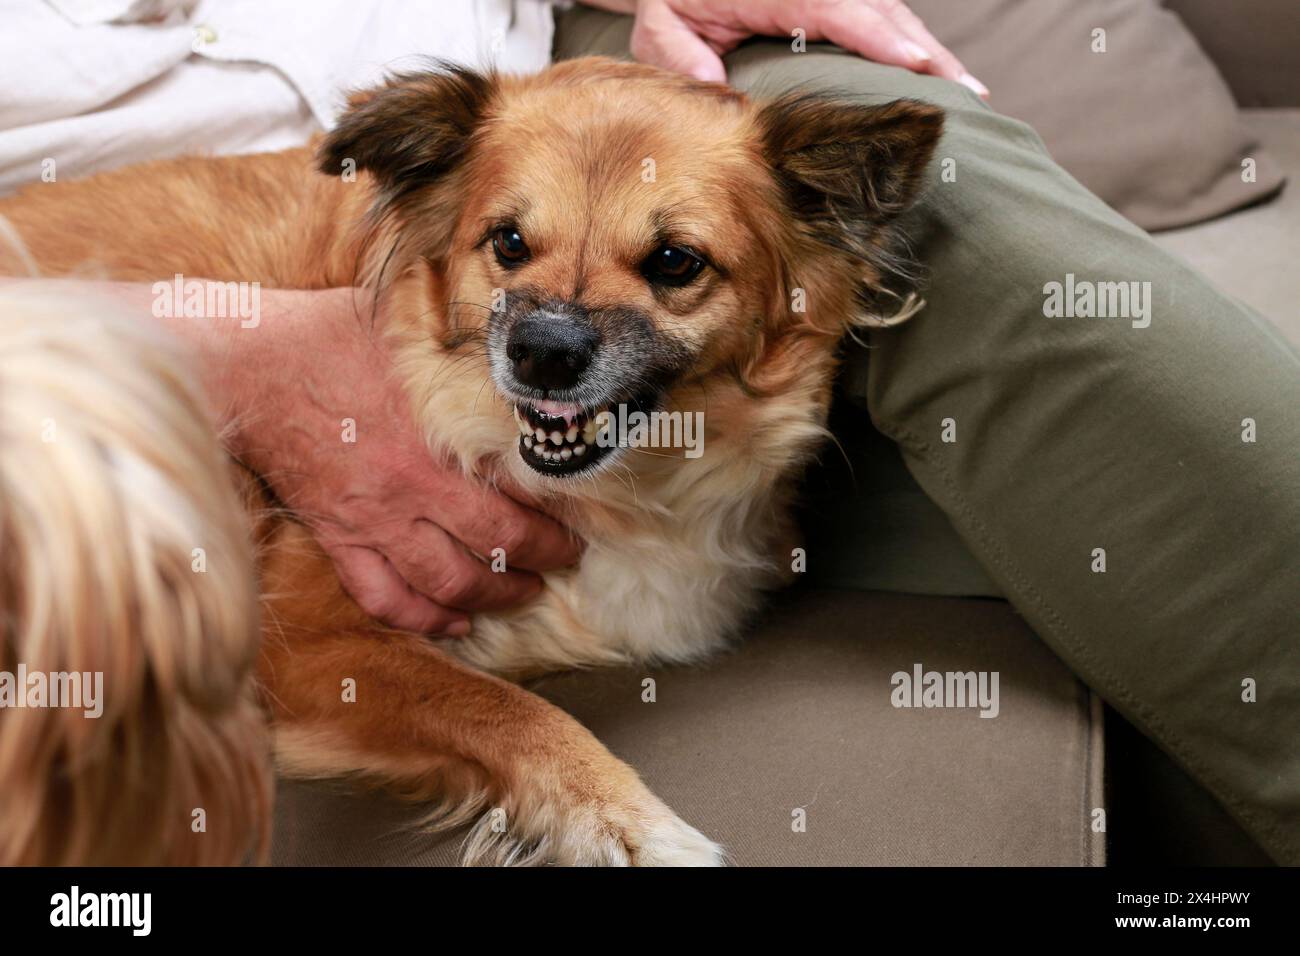 Le chien grogne après un autre chien. Animaux de compagnie en action Banque D'Images